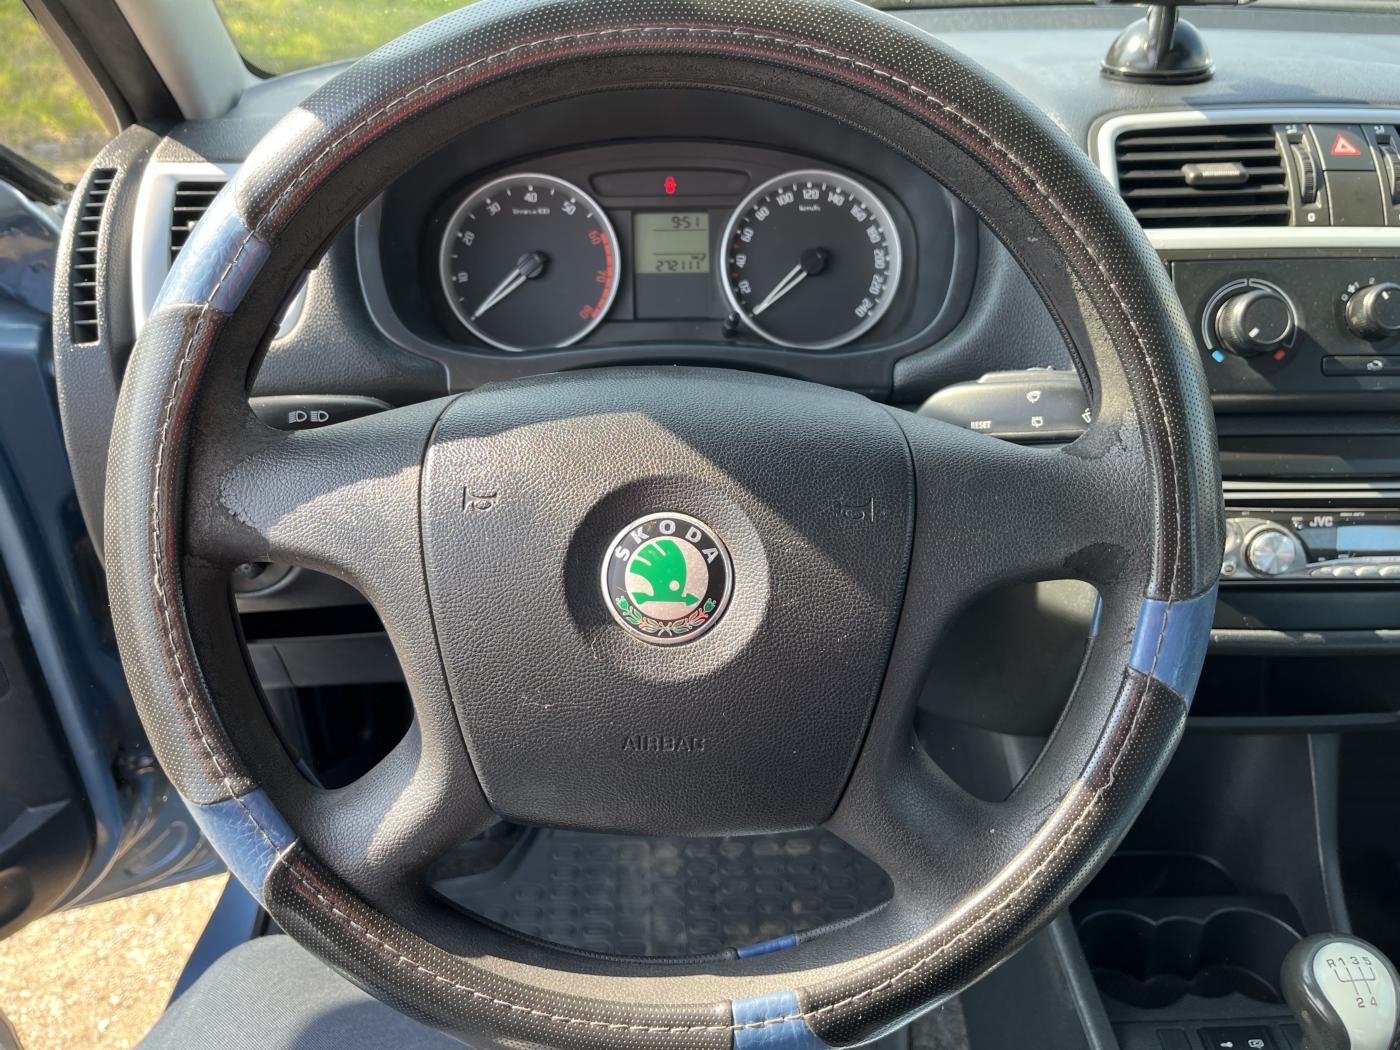 Škoda Fabia 1.4i